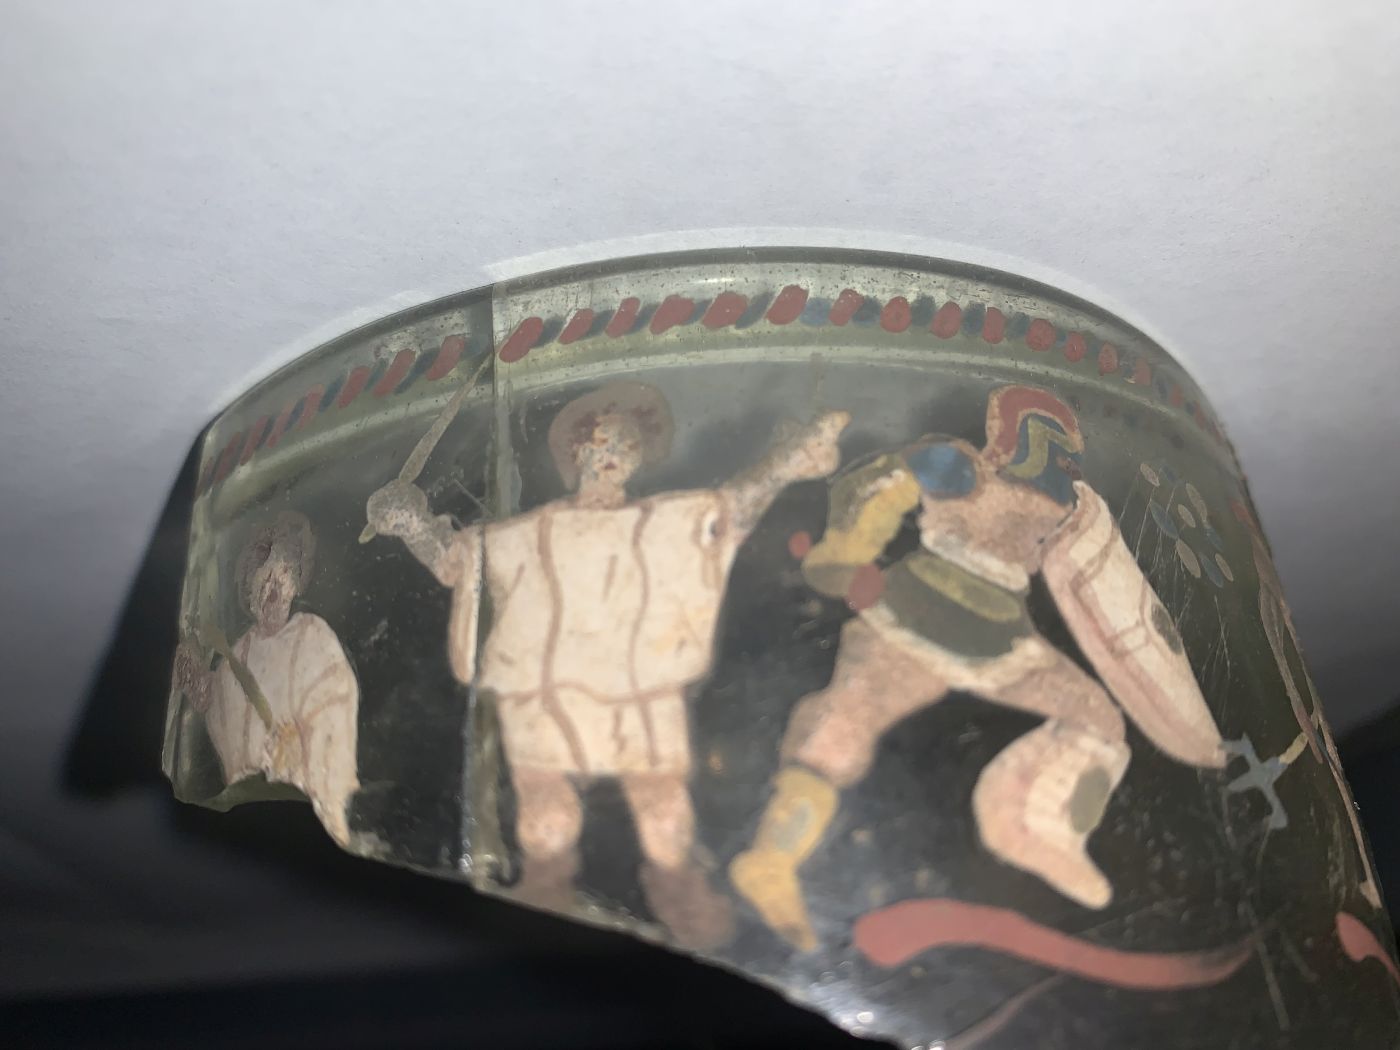 Vindolanda gladiator glass vessel